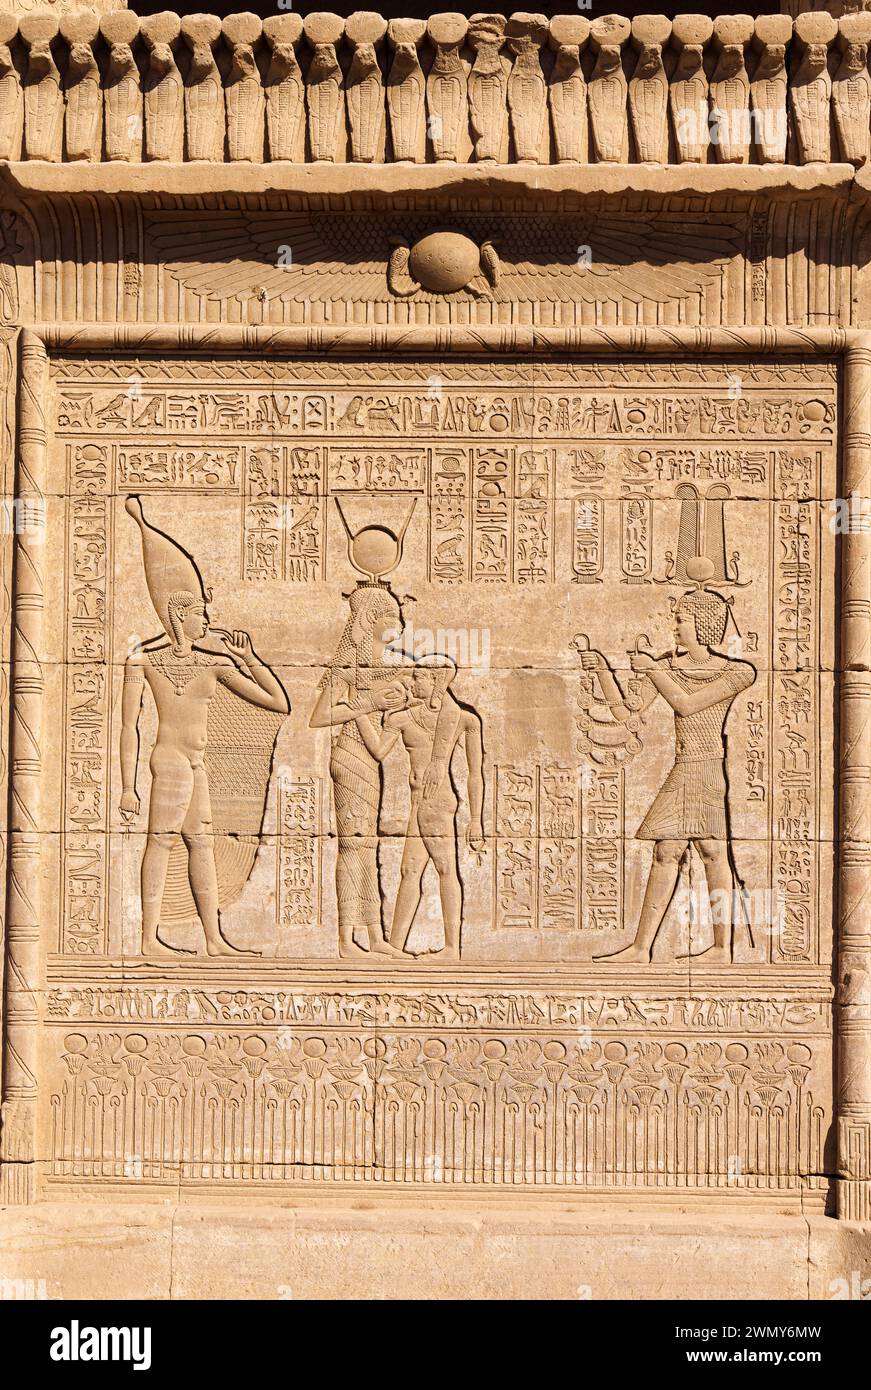 Ägypten, Qena, Dendera, pharaonische Tempel in Oberägypten aus ptolemäischer und römischer Zeit, von der UNESCO zum Weltkulturerbe erklärt, römische Mammisi, niedriges Relief Stockfoto